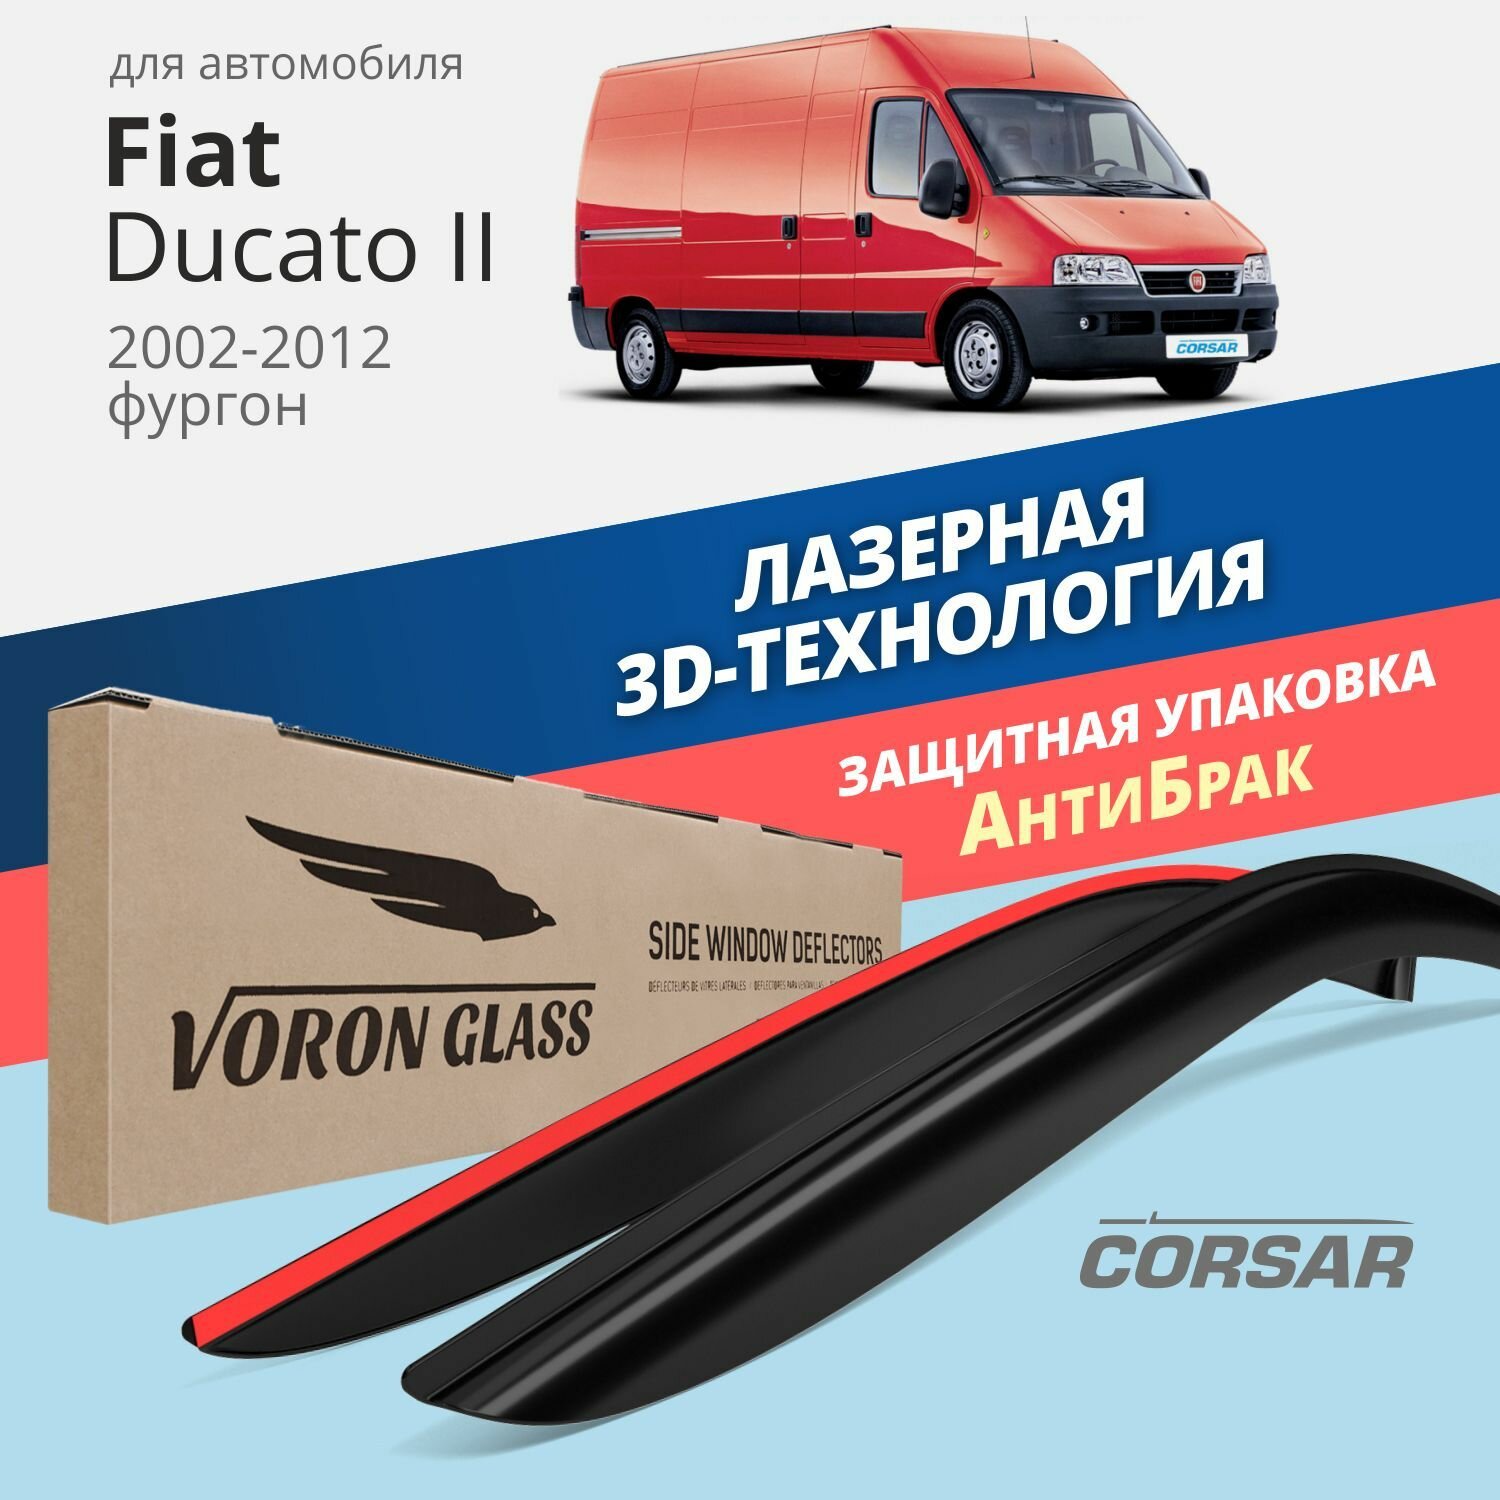 Дефлекторы окон Voron Glass серия Corsar для Fiat Ducato II 2002-2012 накладные 2 шт.